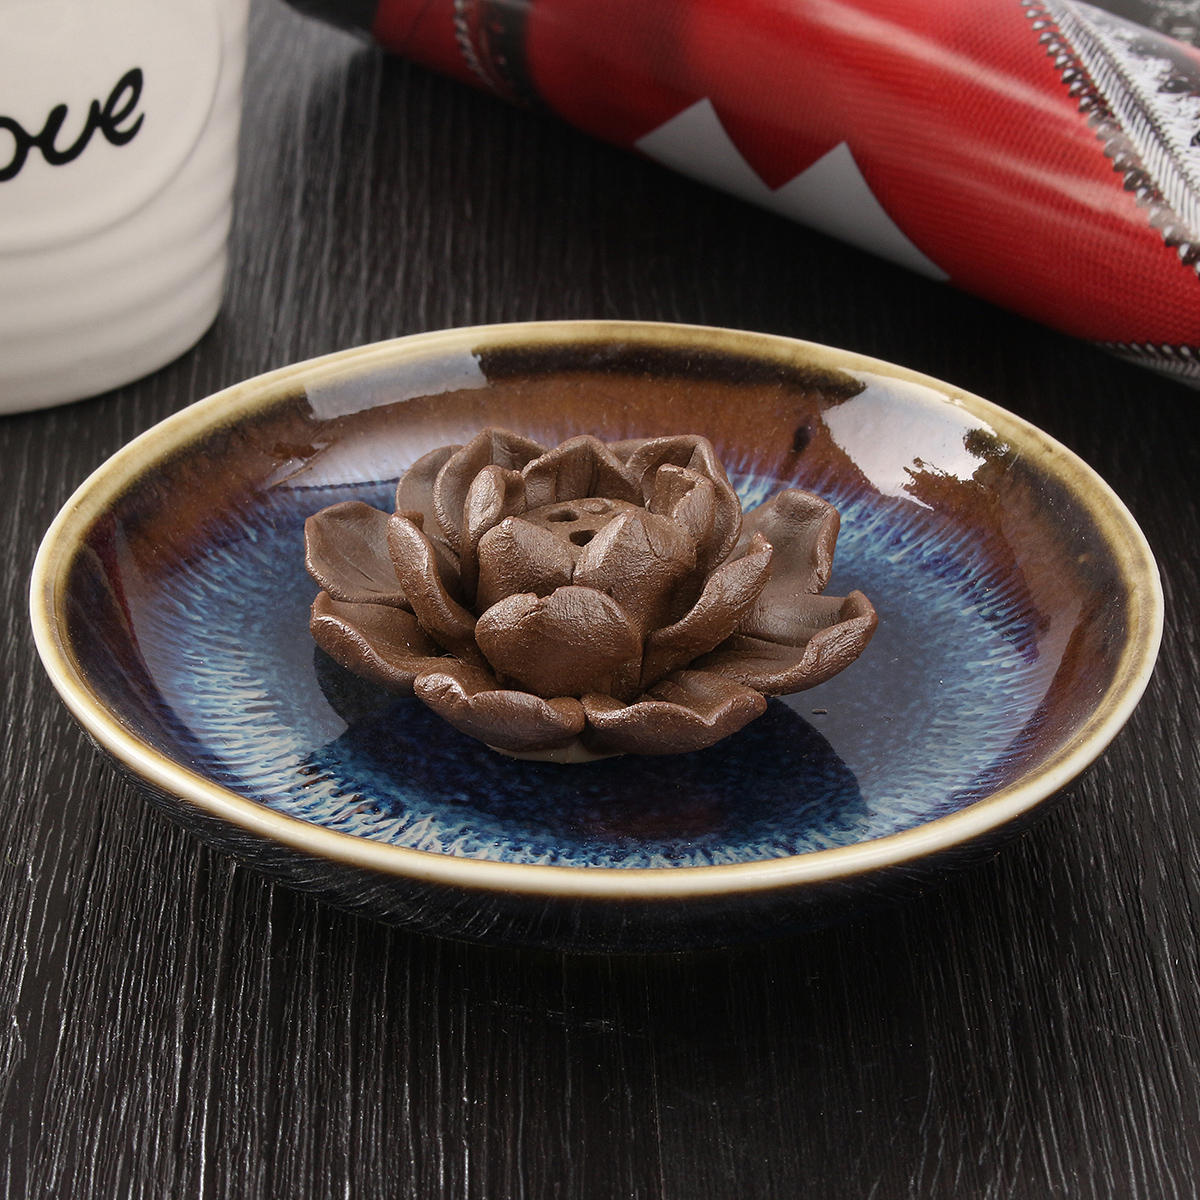 Ceramic Incense Holder Burner Lotus Plate Censer Home Fragrances 3 Incense Holes 